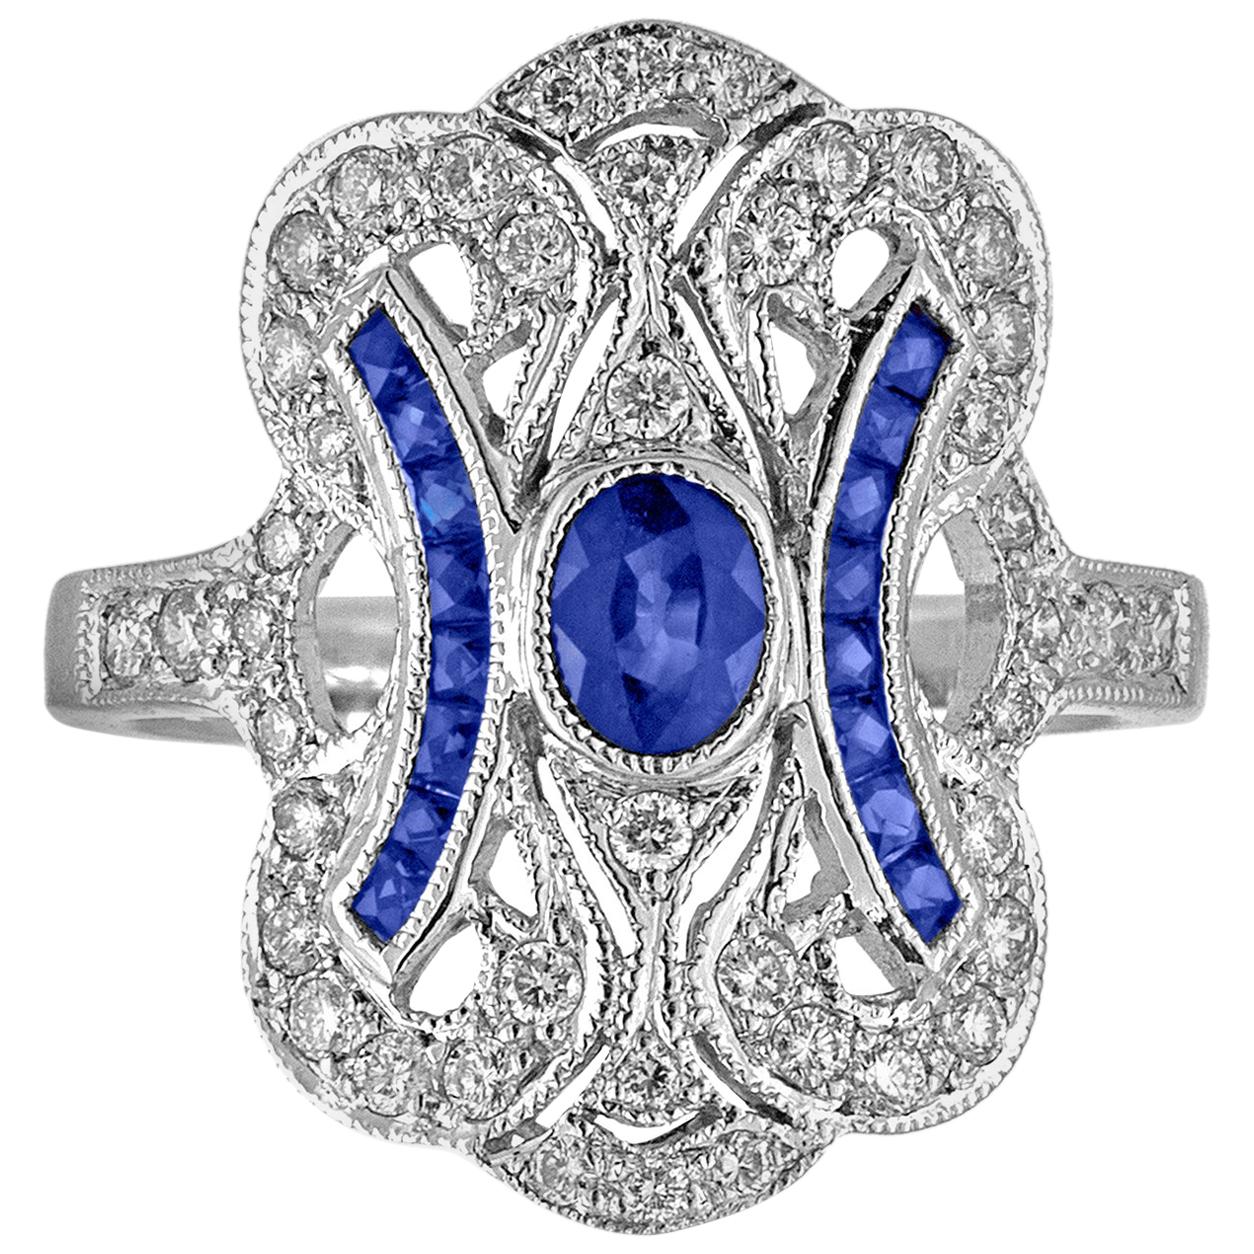 1.15 Carat Blue Sapphire Diamond Gold Ring